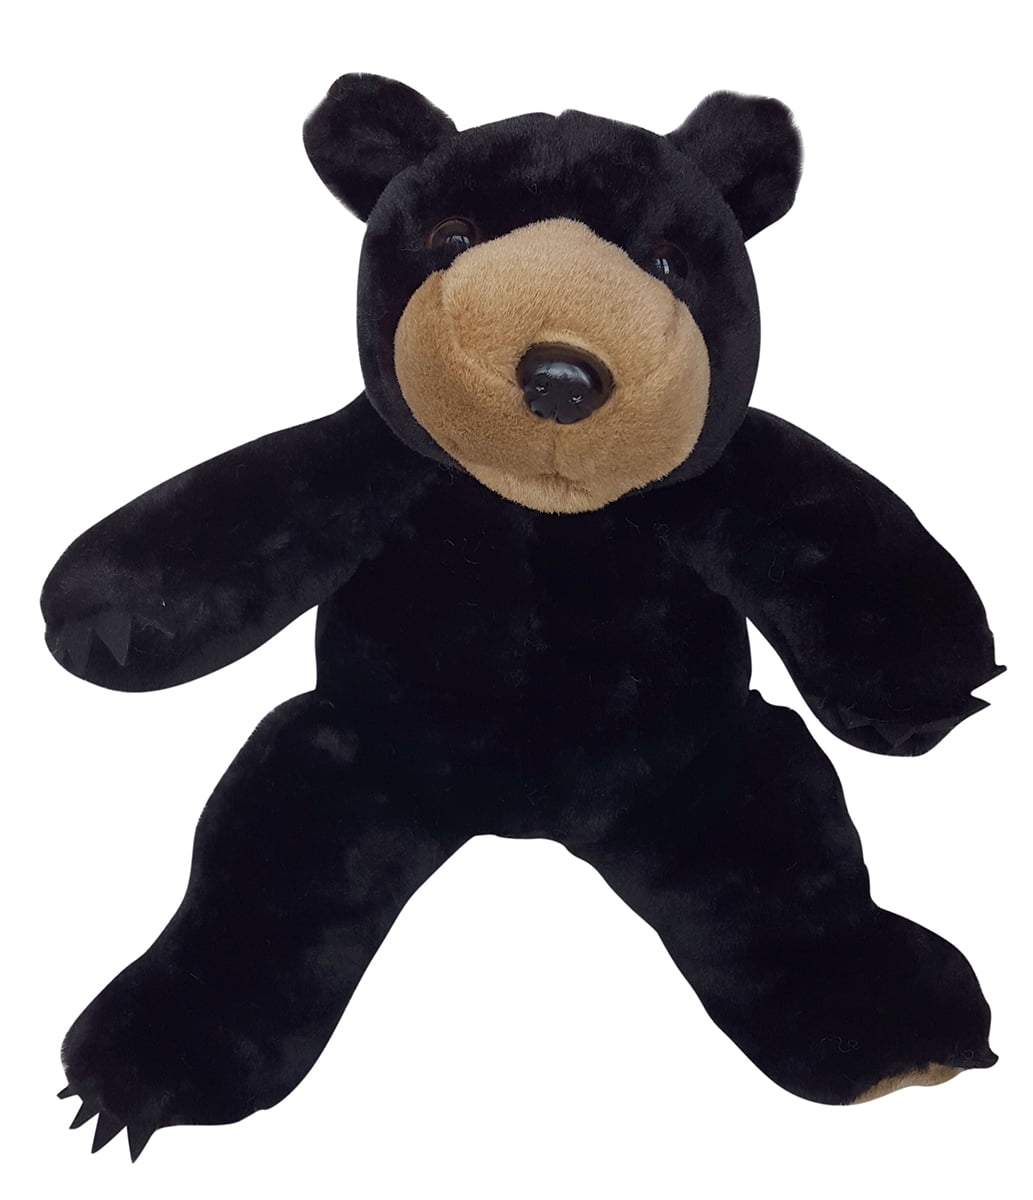 Teddy M Cuddly Soft 16 inch Stuffed Black Lab ....We stuff 'em...you love 'em! 